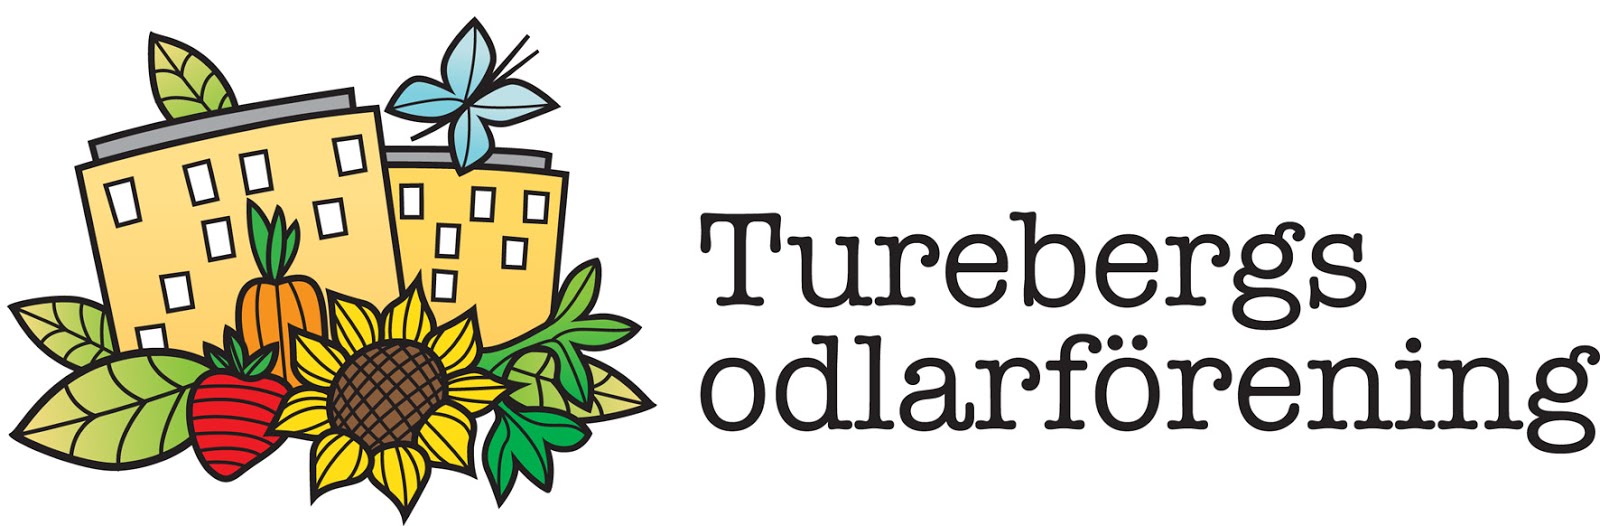 Turebergs odlarförening